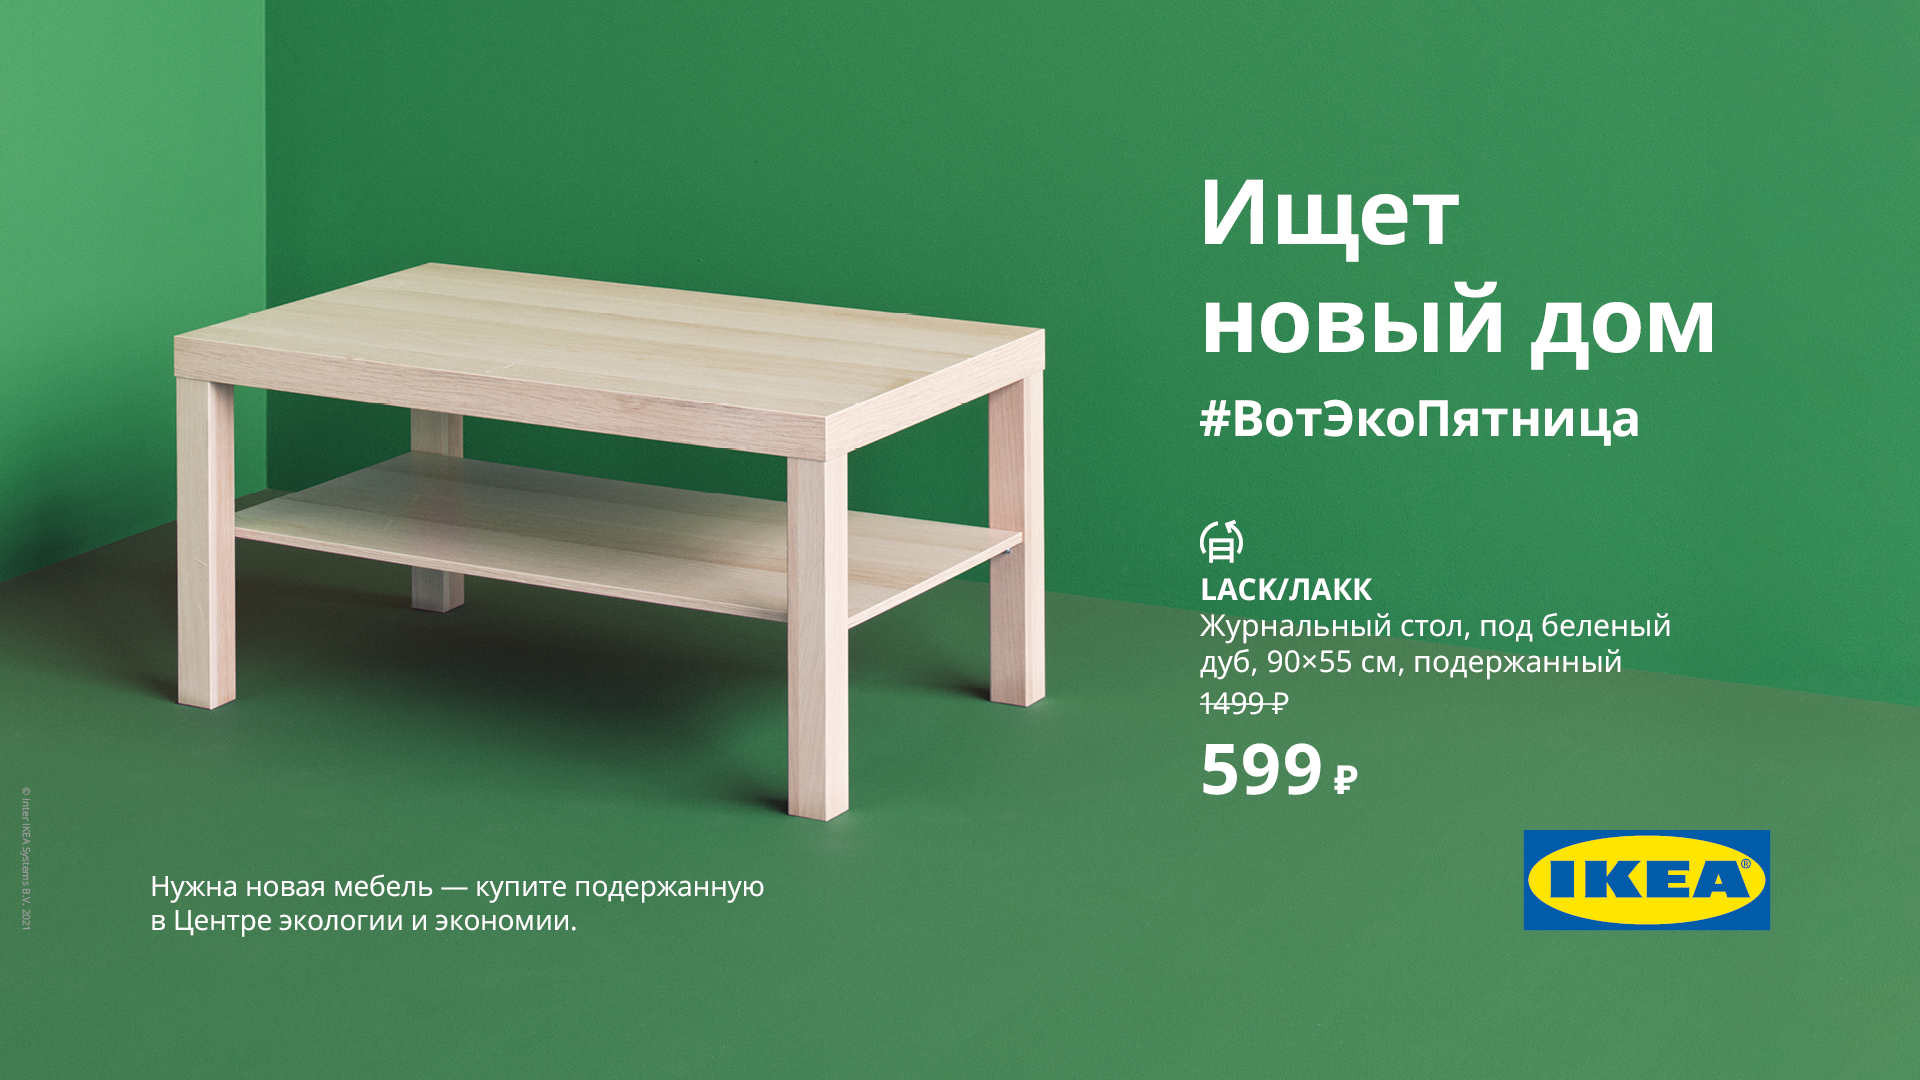 Enkel - мебель и товары для дома | ВКонтакте